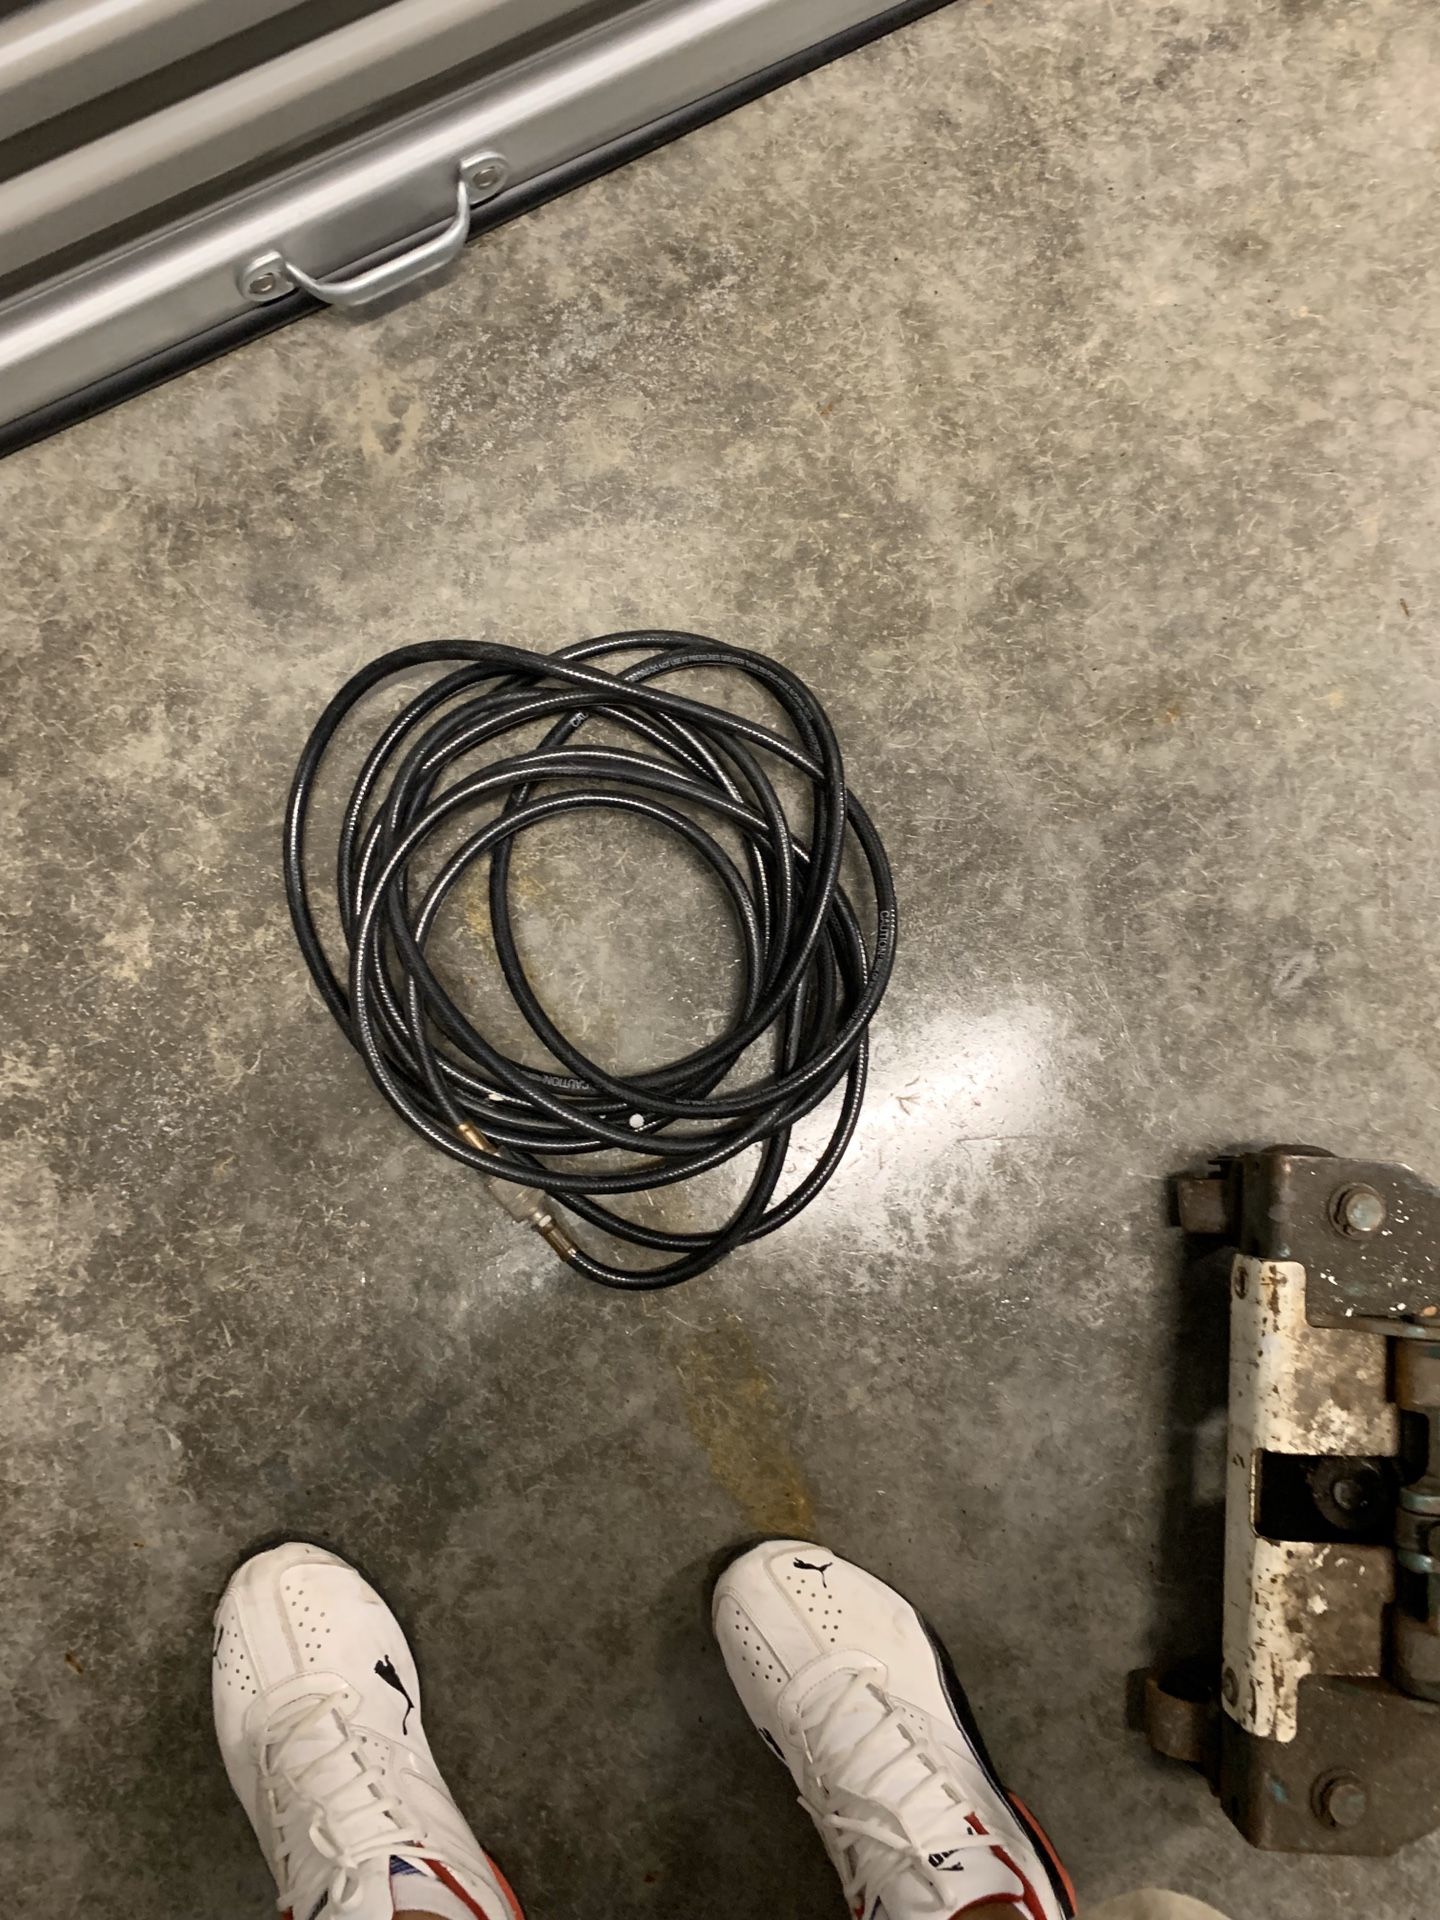 3 compressor hoses